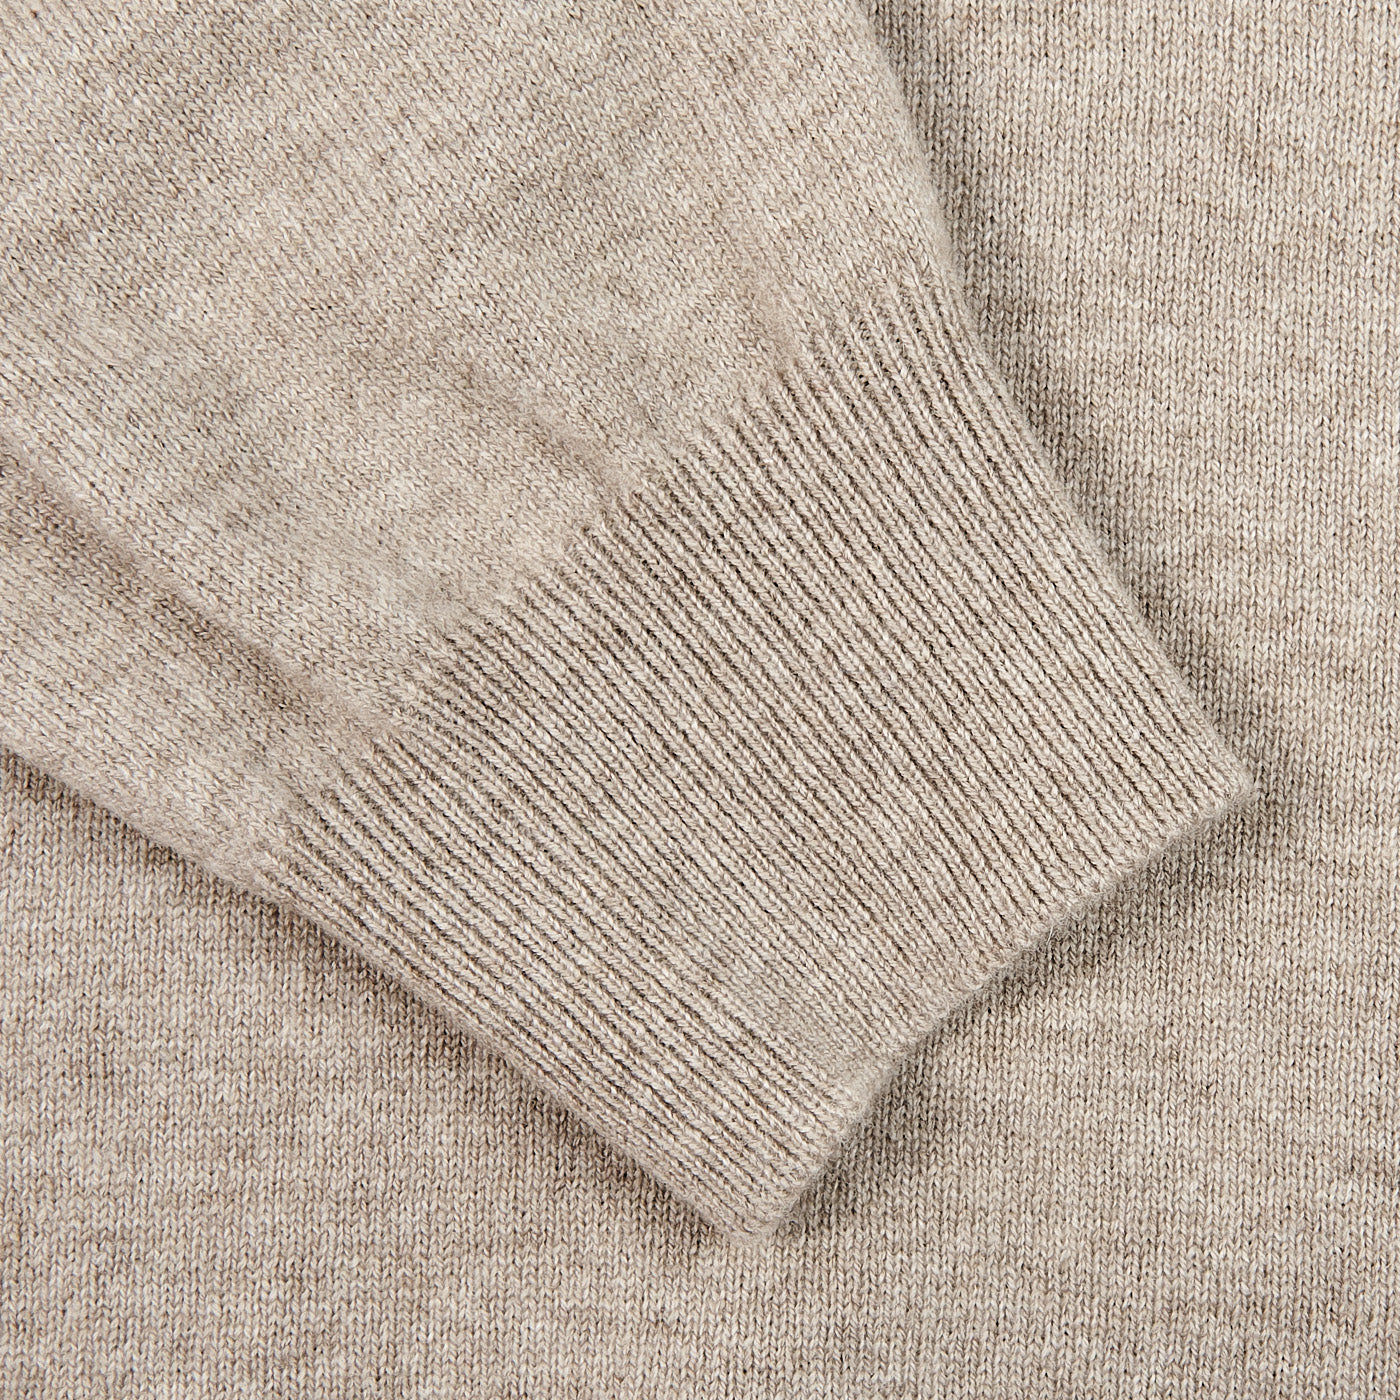 Gran Sasso Beige Wool Cashmere 1:4 Zip Sweater Cuff